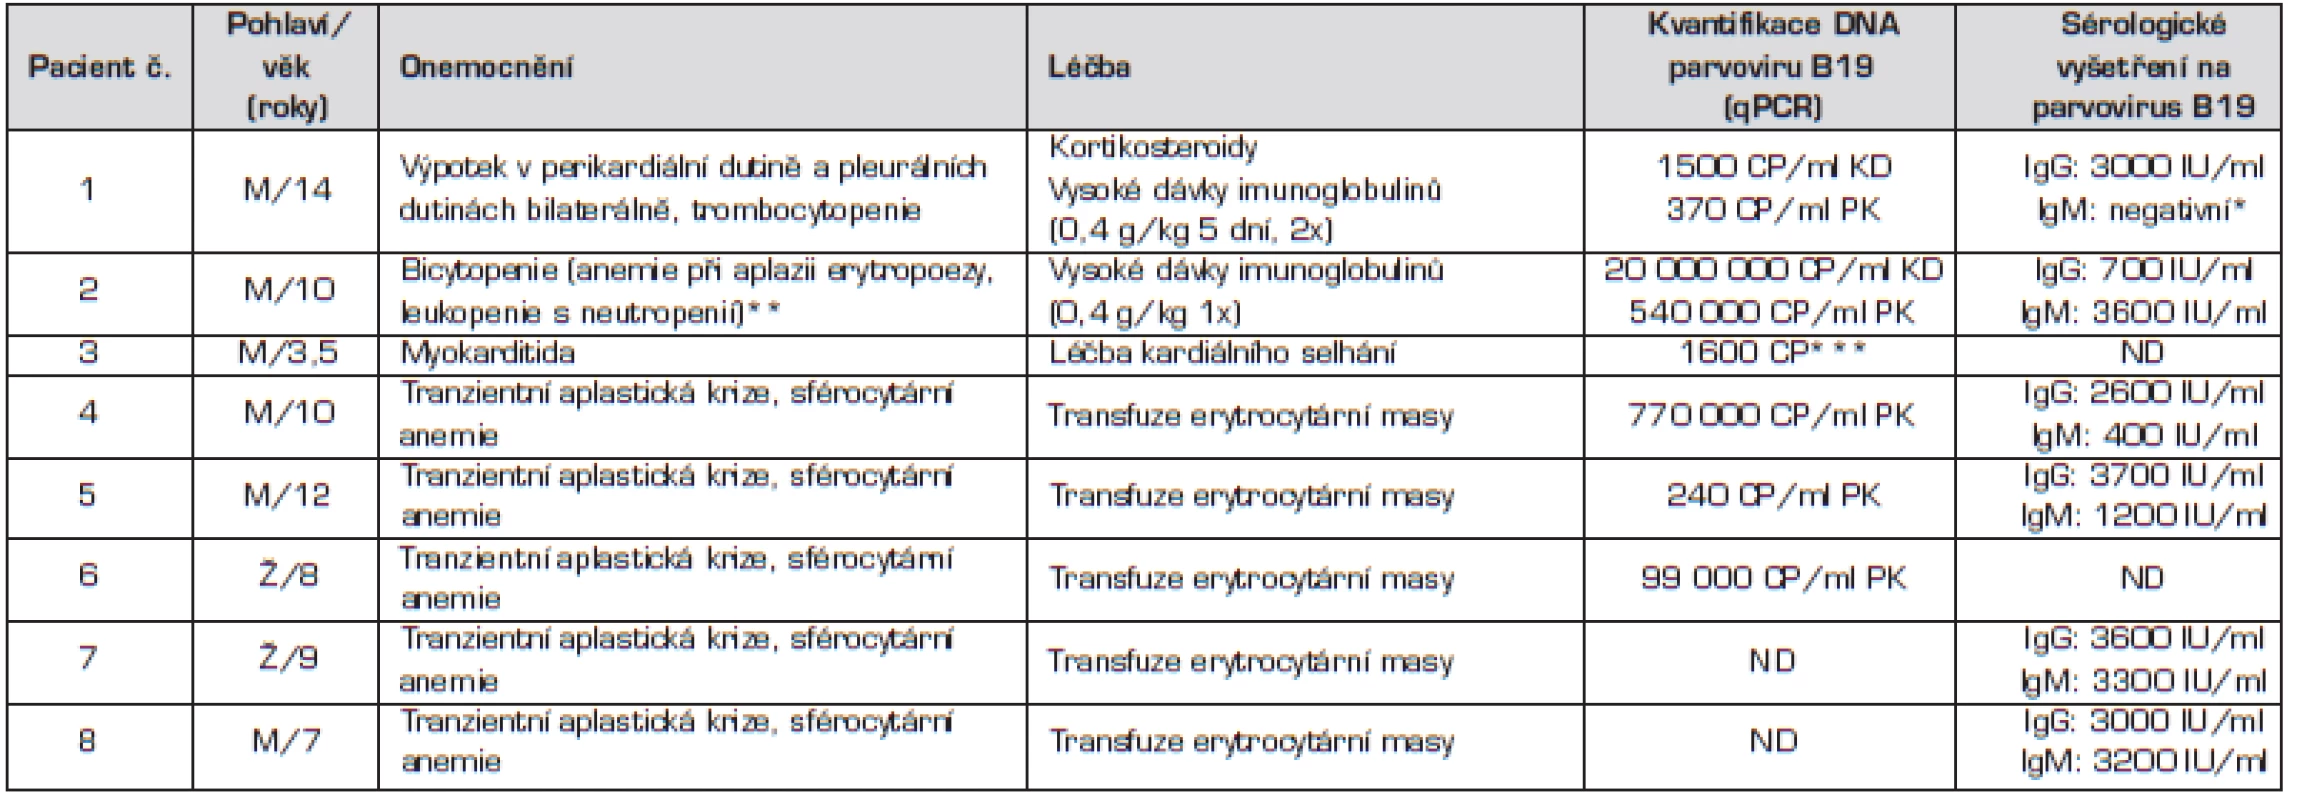 Základní charakteristiky souboru pacientů.